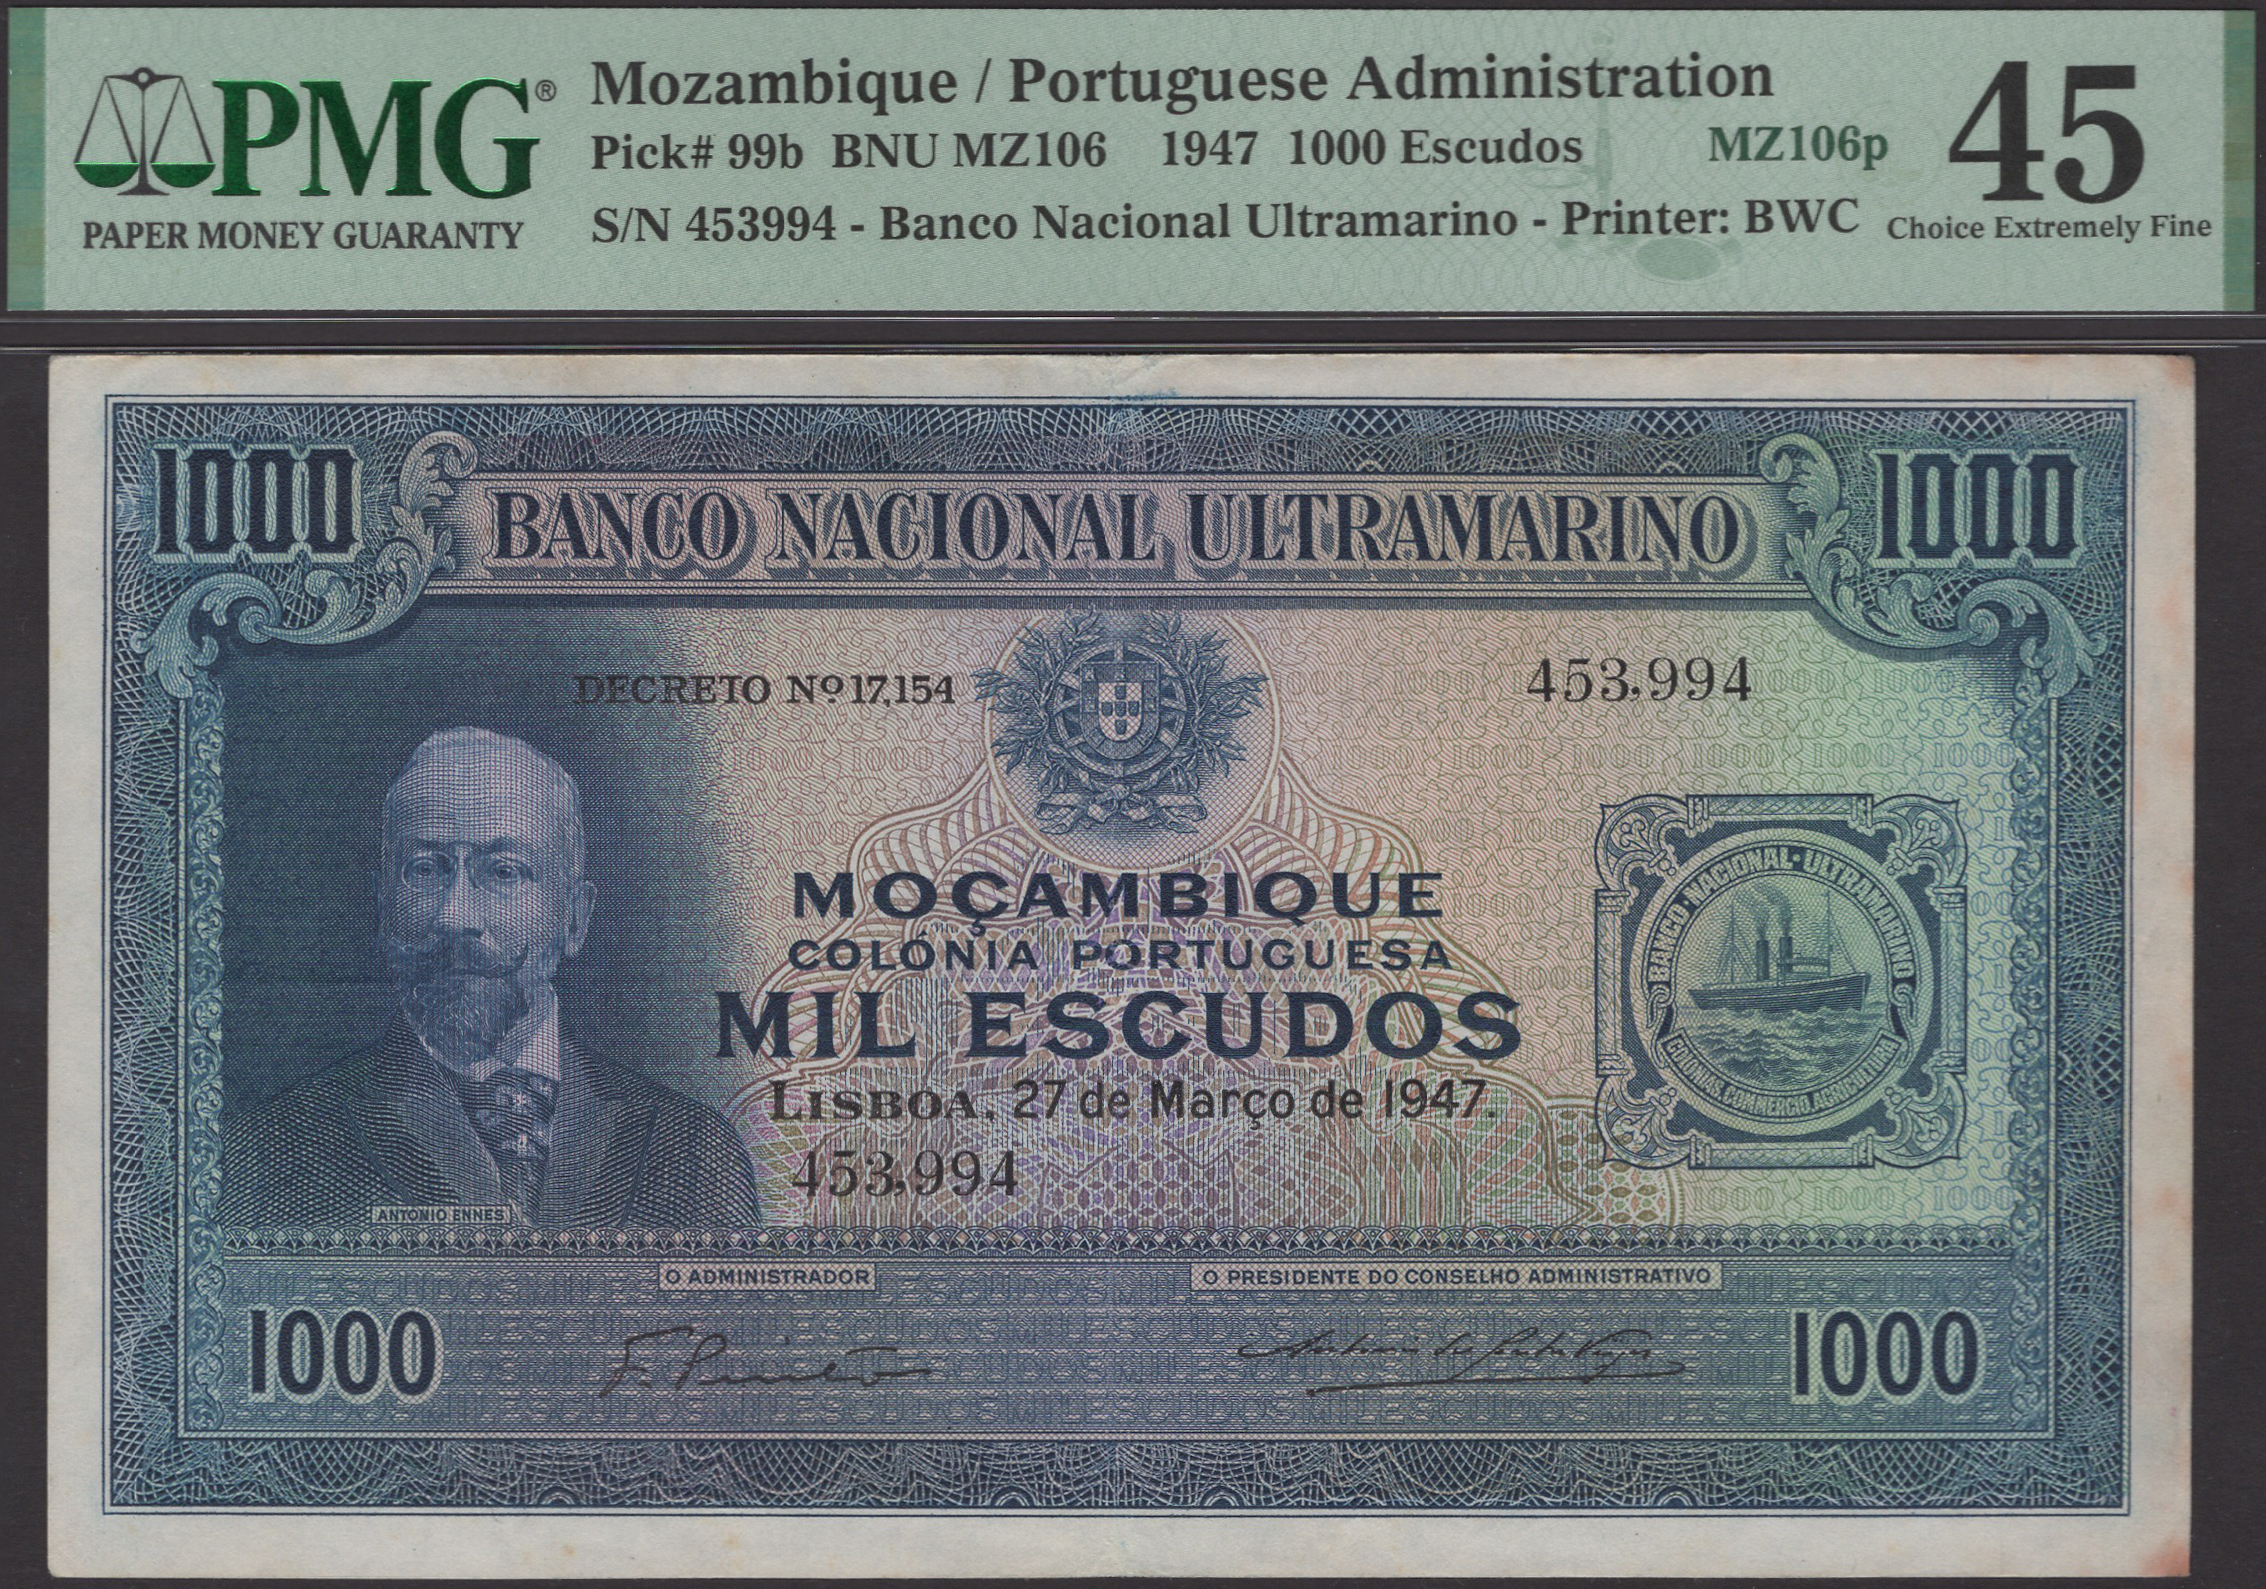 Banco Nacional Ultramarino, Mozambique, 1000 Escudos, 27 March 1947, serial number 453994,...